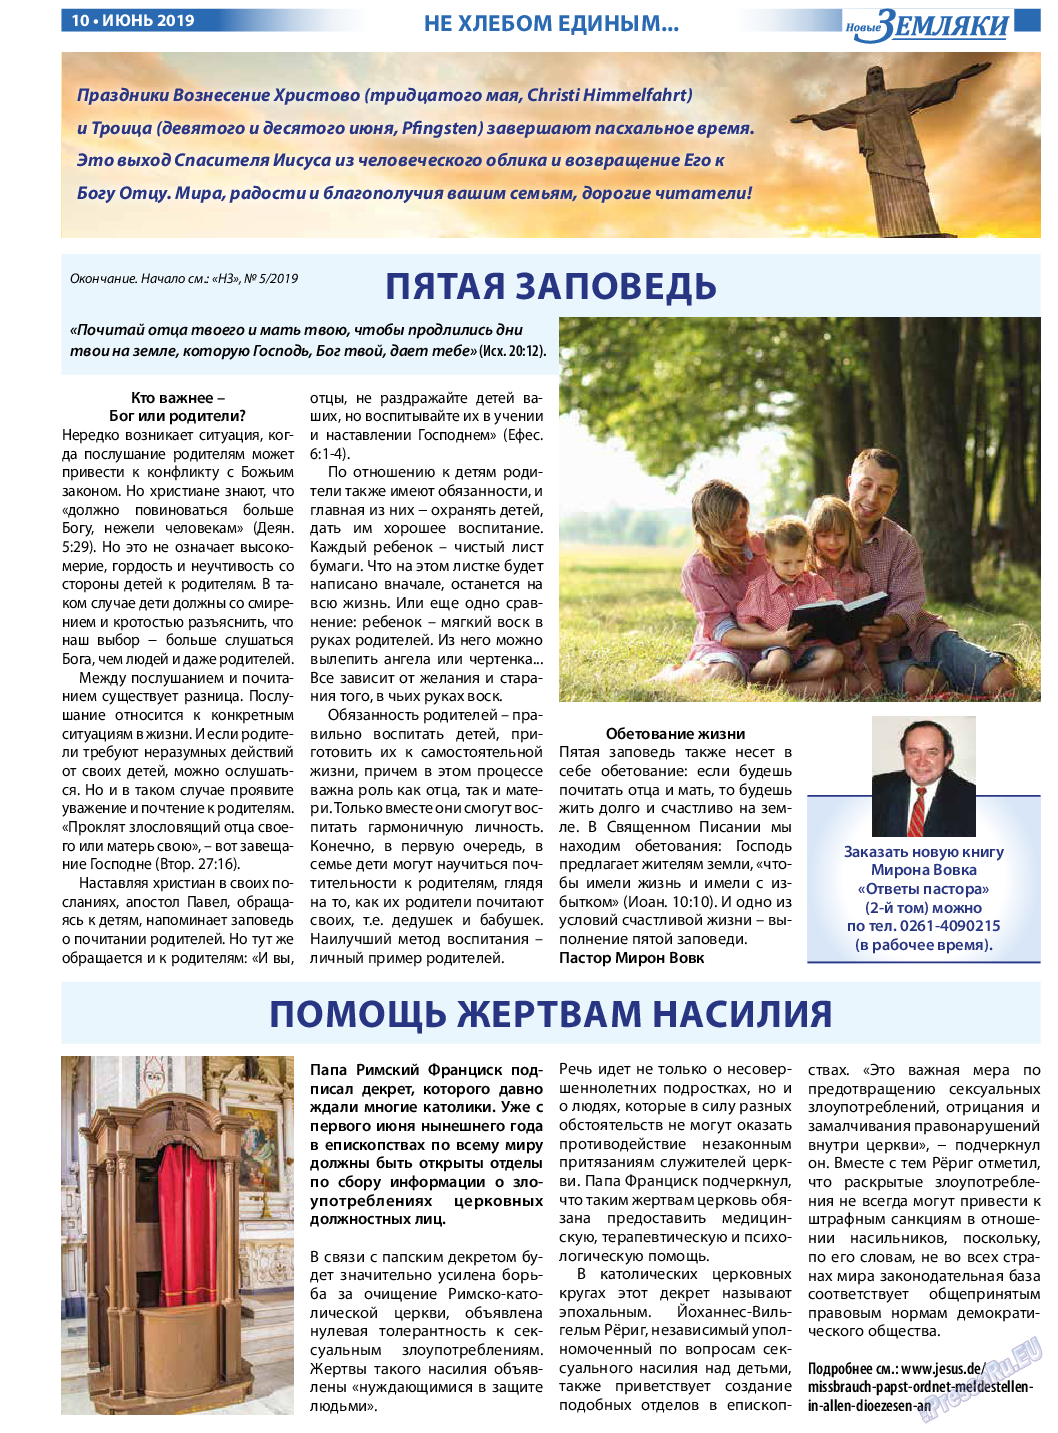 Новые Земляки, газета. 2019 №6 стр.10